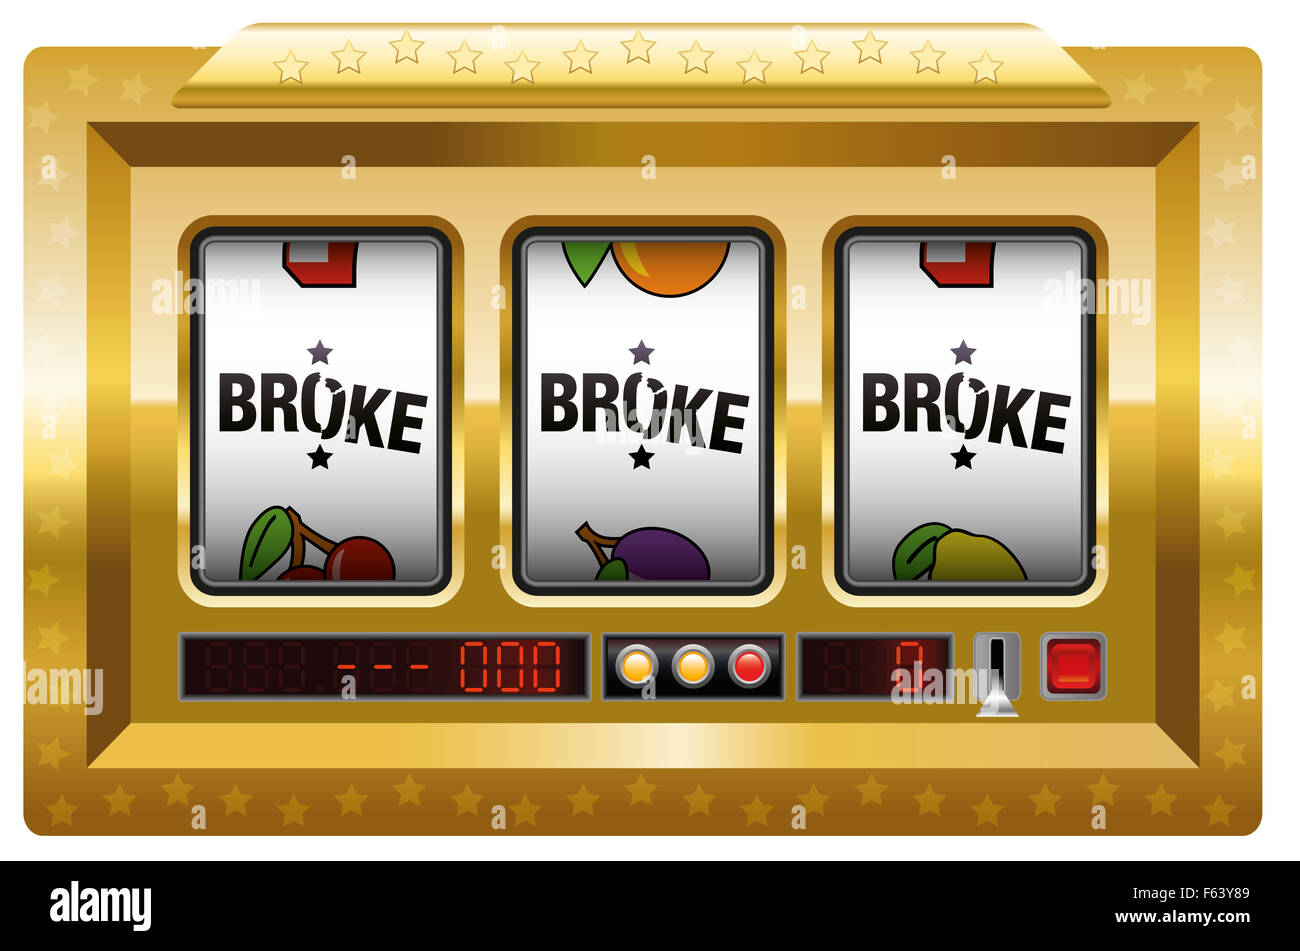 Brach - Spielautomat mit drei Walzen Schriftzug BROKE. Abbildung auf weißem Hintergrund. Stockfoto